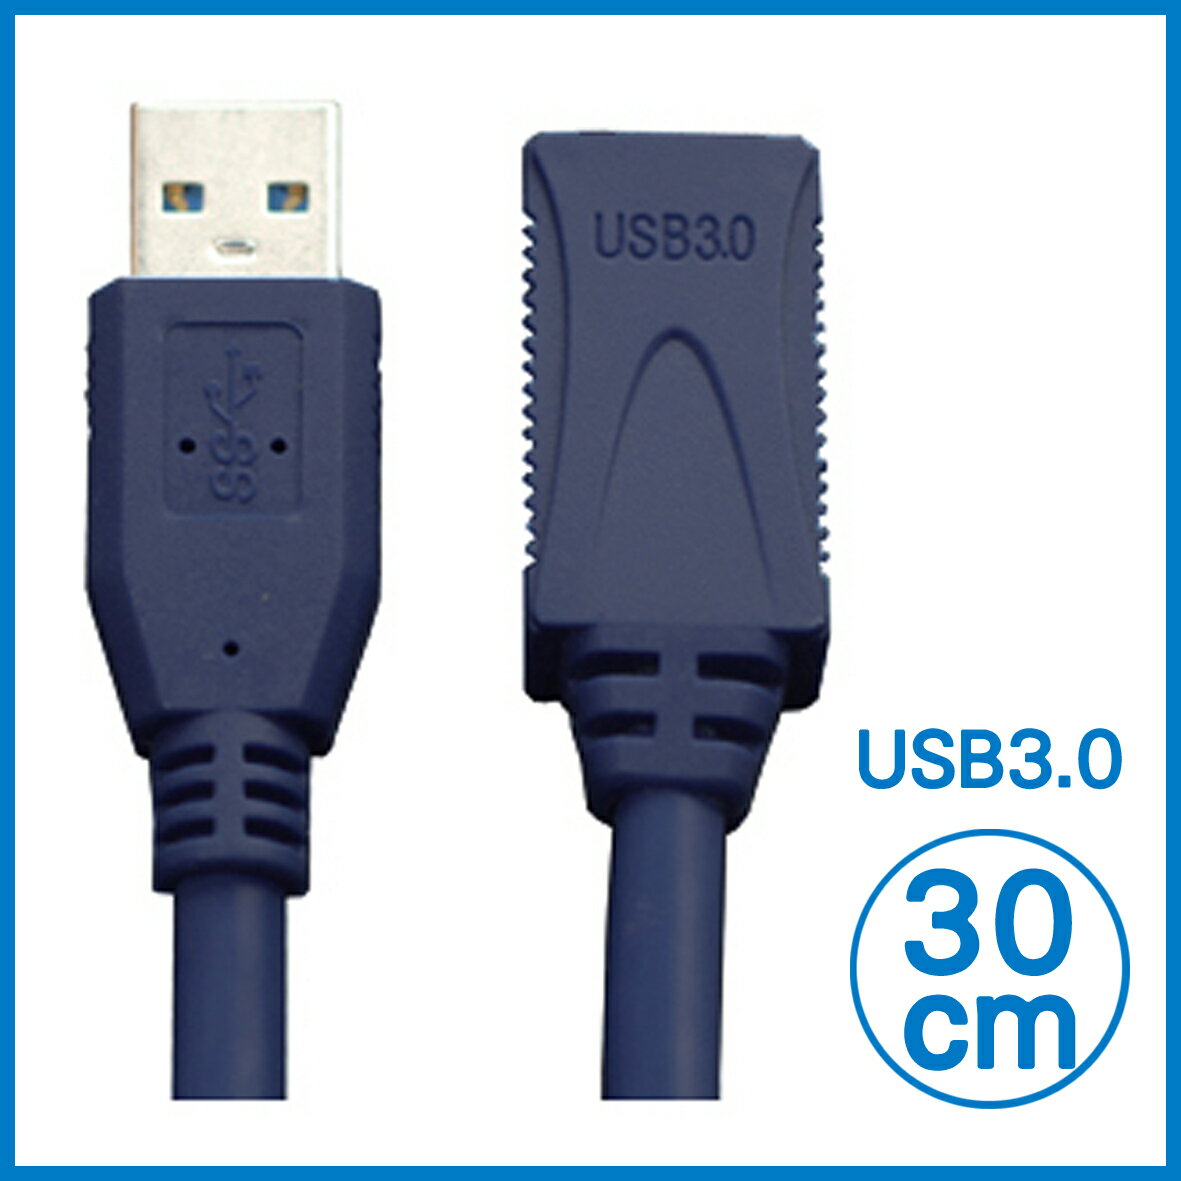 【9%點數】USB延長線 USB3.0 延長線 30cm【APP下單9%點數回饋】【限定樂天APP下單】